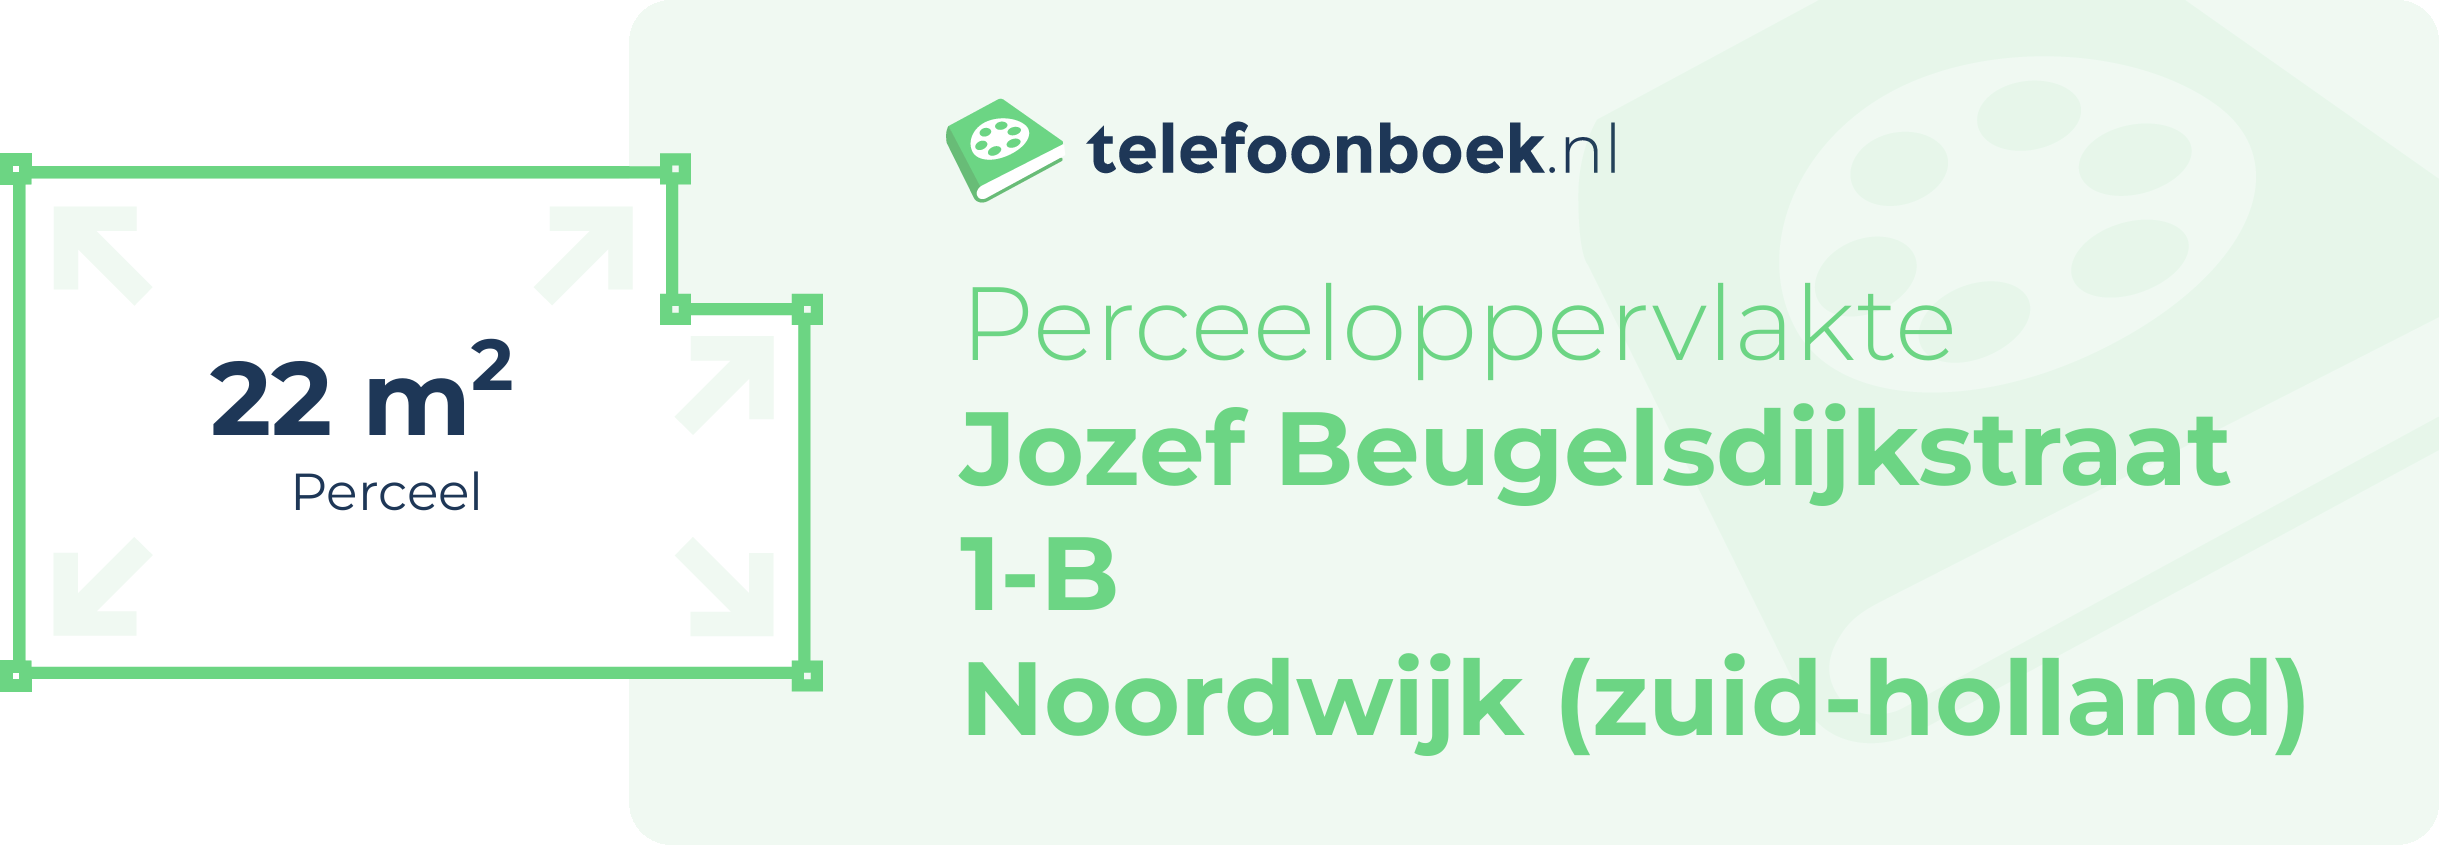 Perceeloppervlakte Jozef Beugelsdijkstraat 1-B Noordwijk (Zuid-Holland)